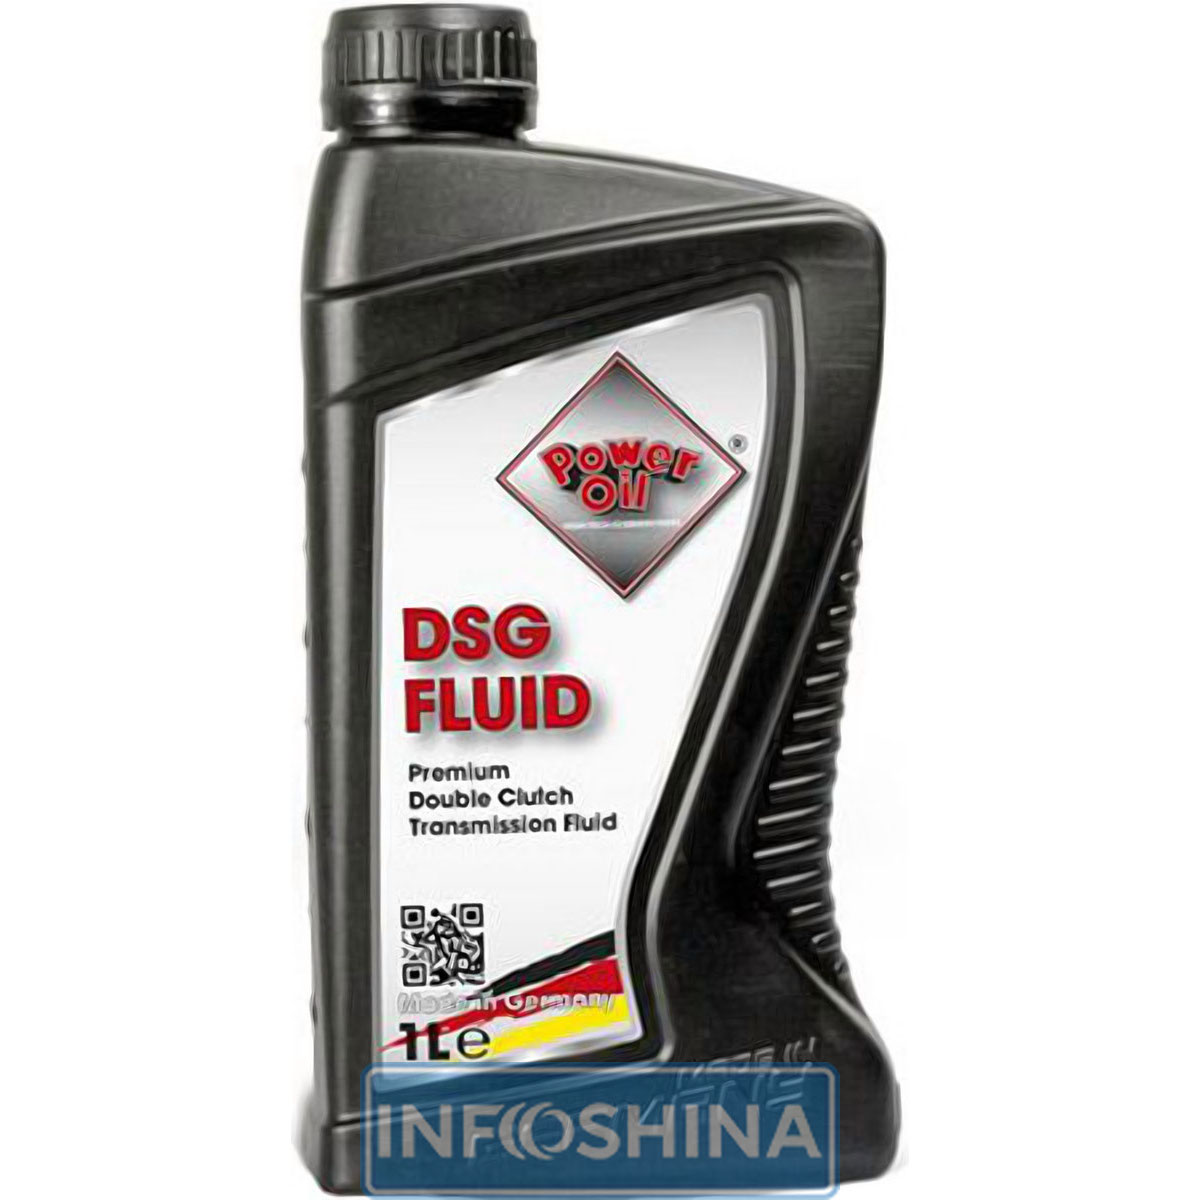 Power Oil DSG Fluid